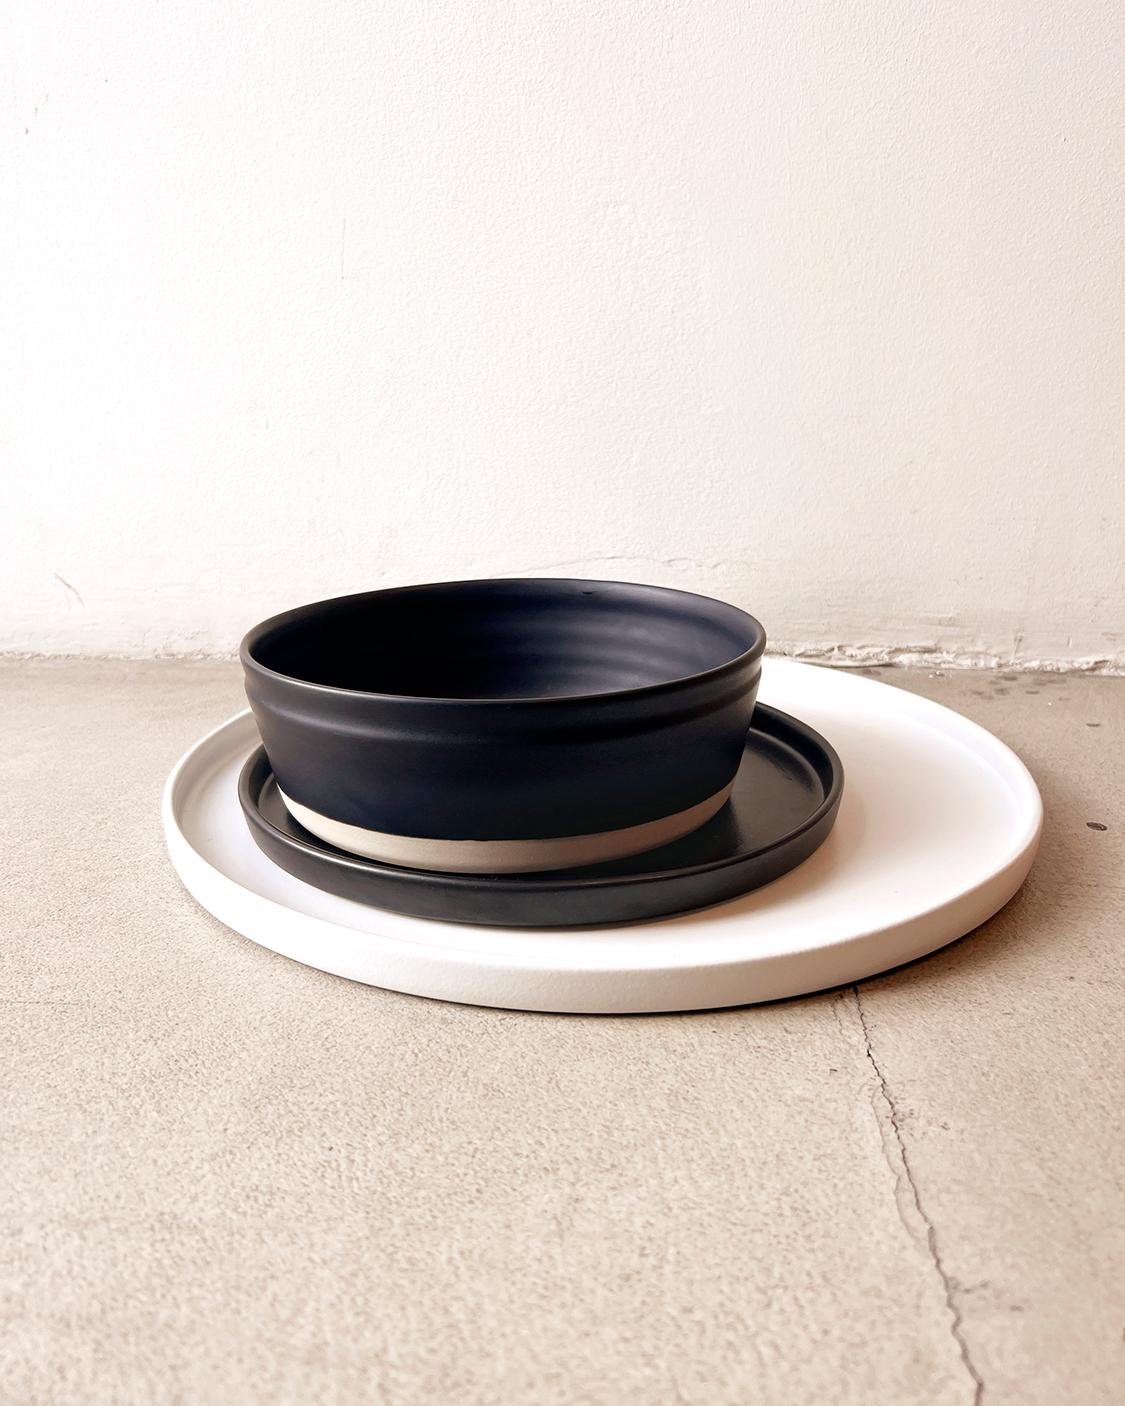 Élégants bols en grès noir mat au design minimaliste.

Cette vaisselle allie design moderne et savoir-faire artisanal. Parfait pour tous ceux qui aiment organiser des dîners ou qui veulent simplement assortir leur décor de cuisine noir. Ces bols de